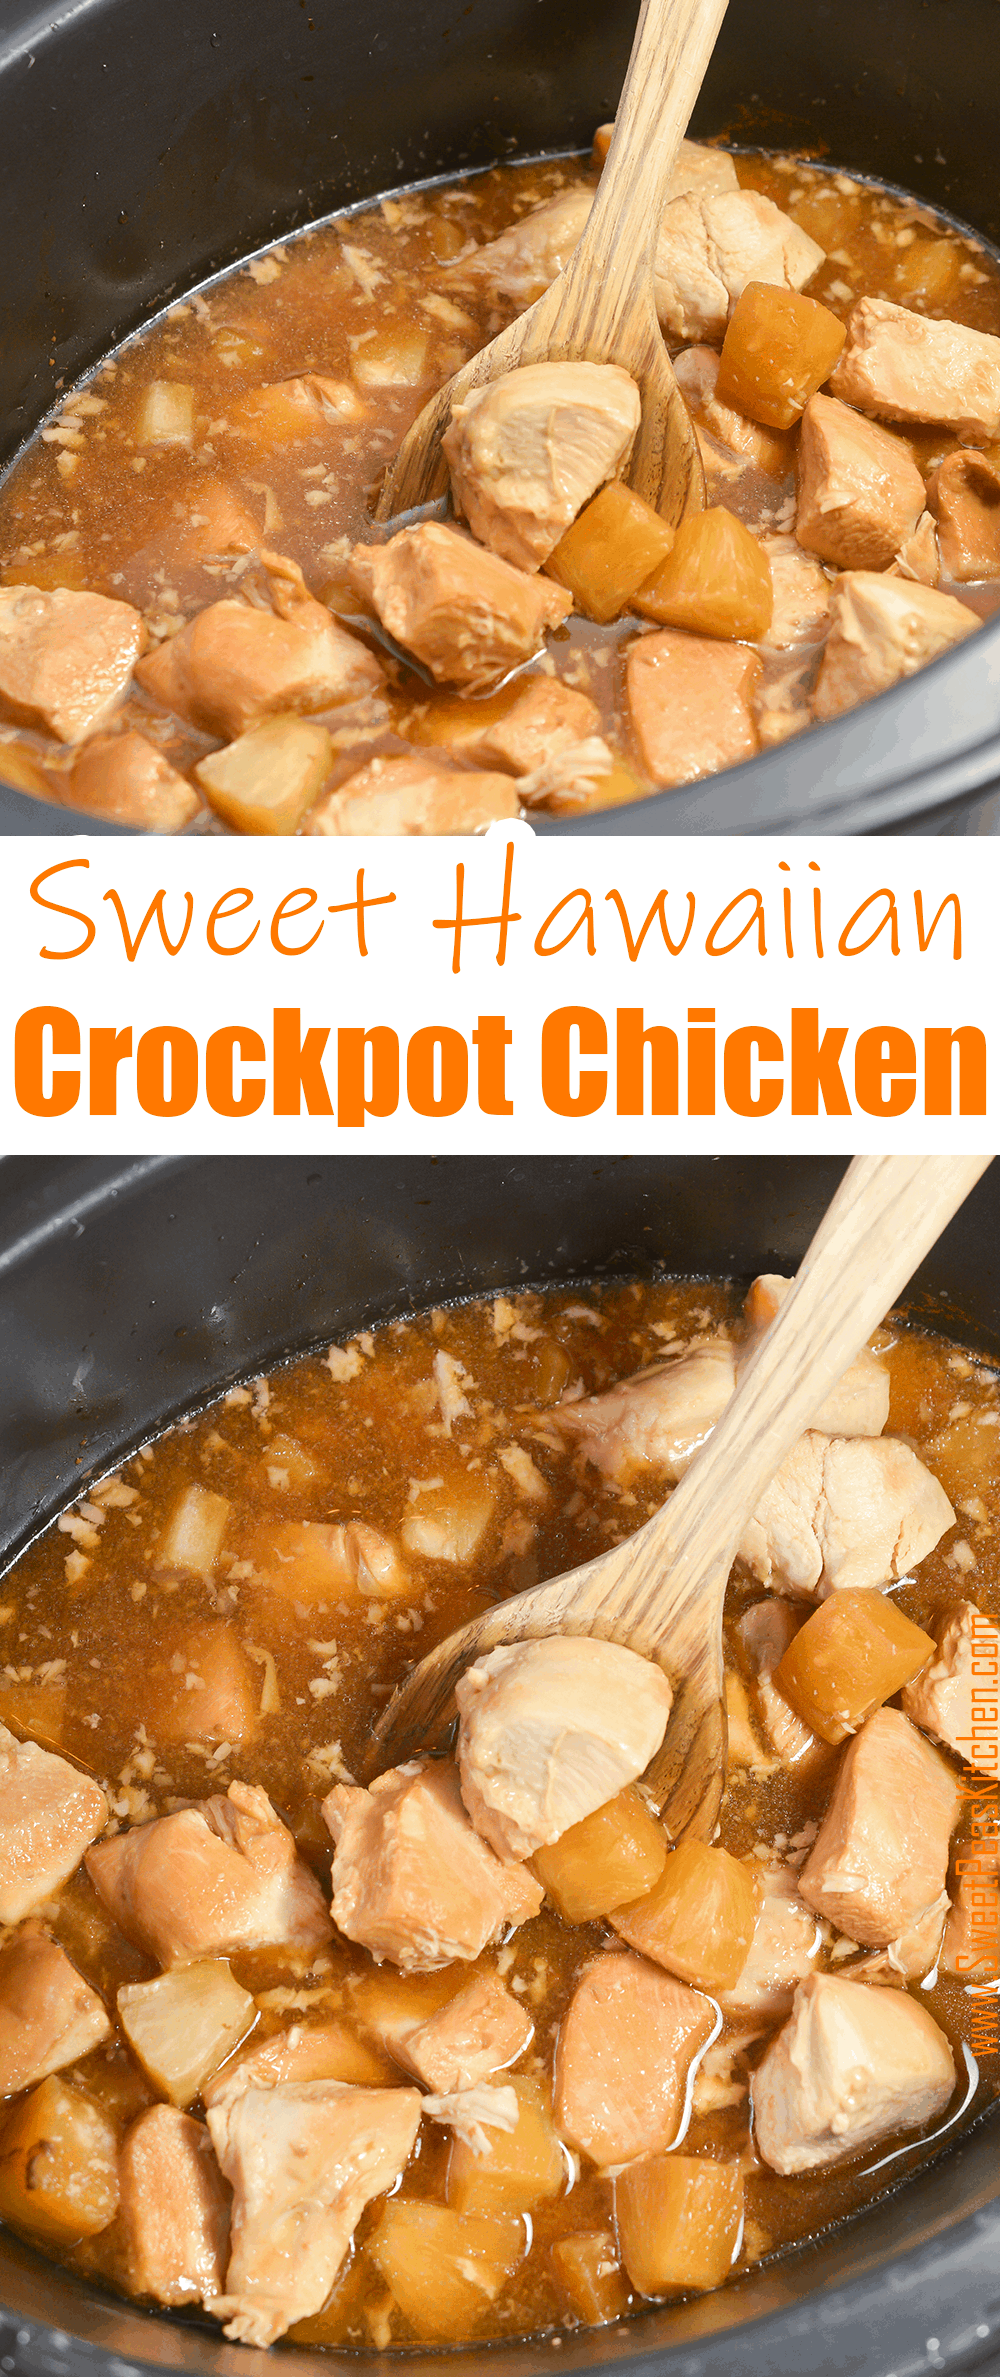 Sweet Hawaiian Crockpot Chicken on Pinterest